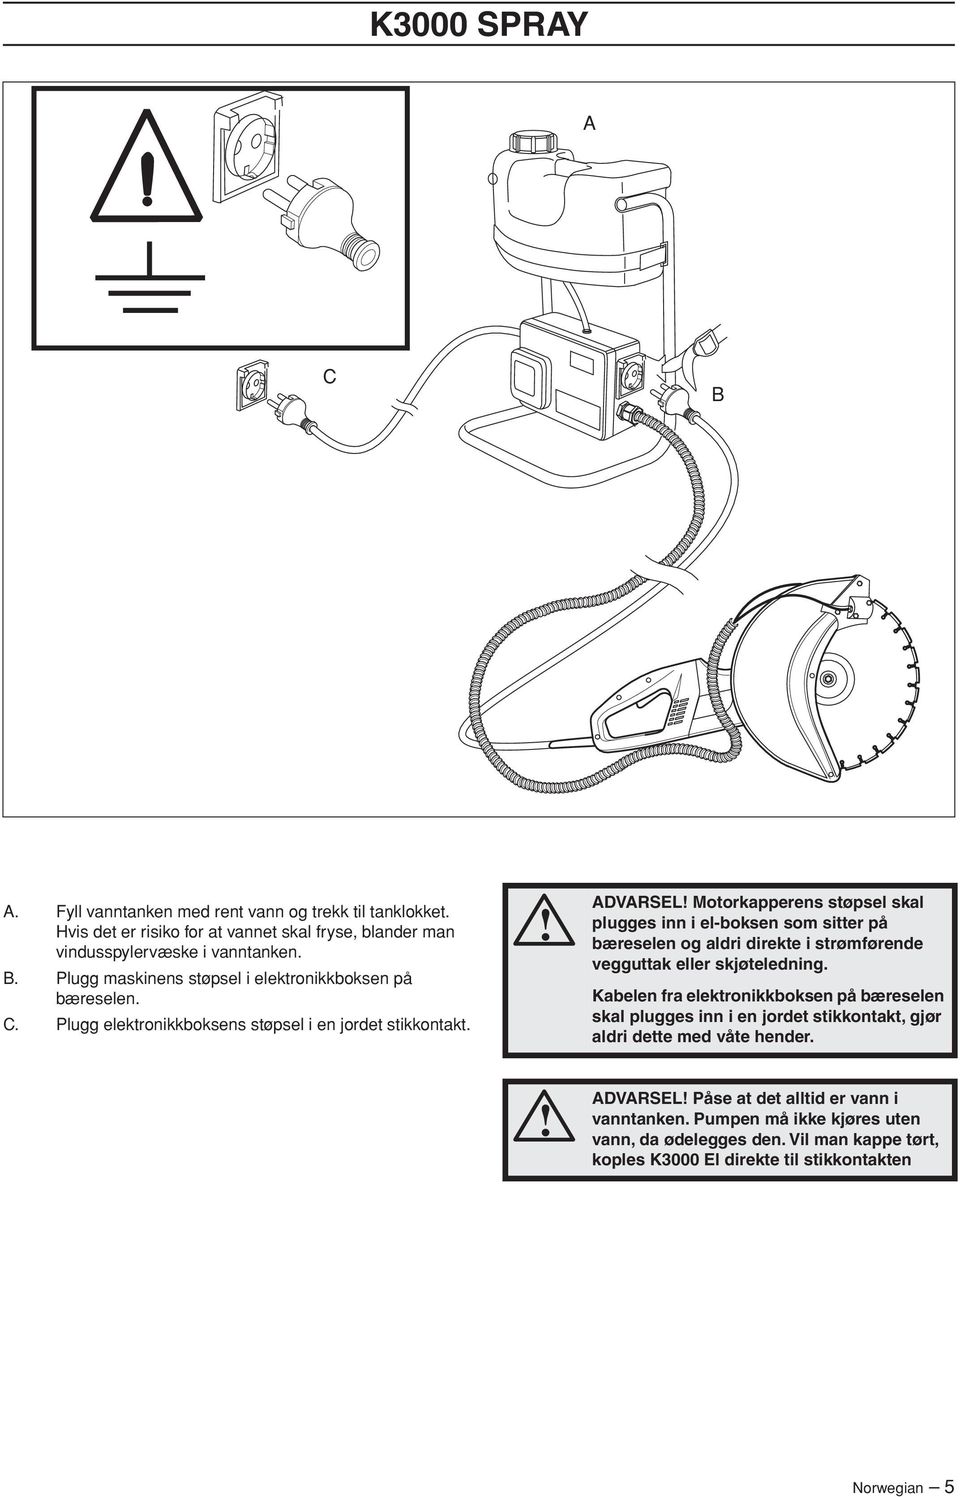 ADVARSEL Motorkapperens støpsel skal plugges inn i el-boksen som sitter på bæreselen og aldri direkte i strømførende vegguttak eller skjøteledning.